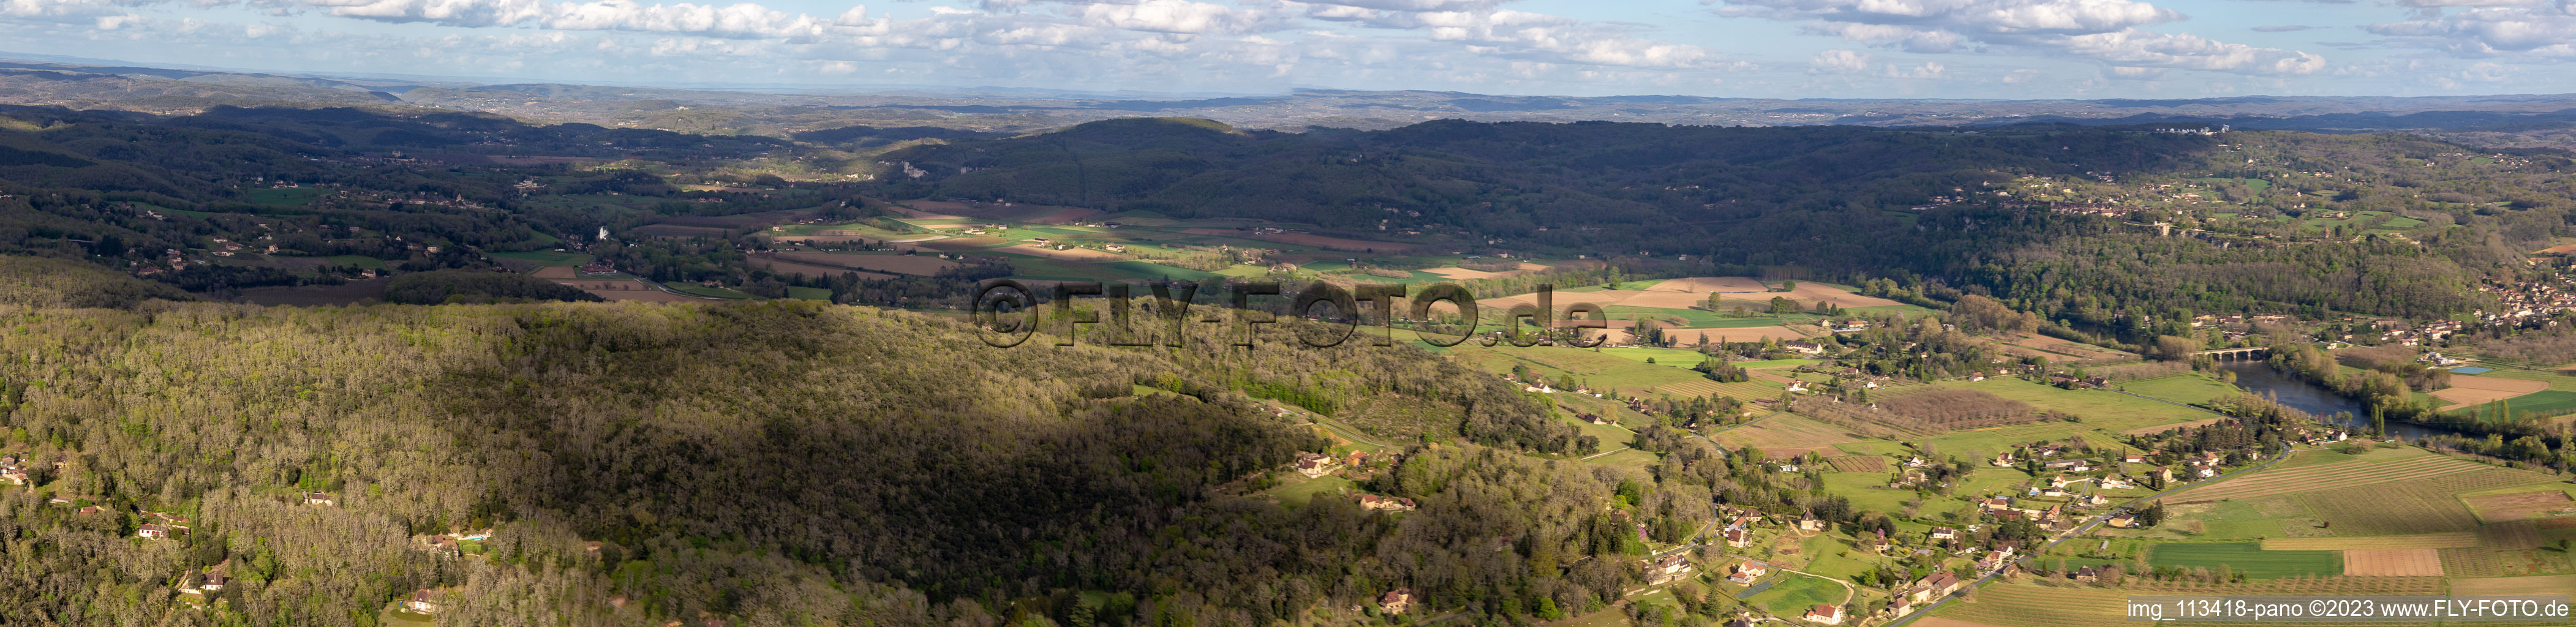 Vue aérienne de Panorama du Périgord à La Roque-Gageac dans le département Dordogne, France